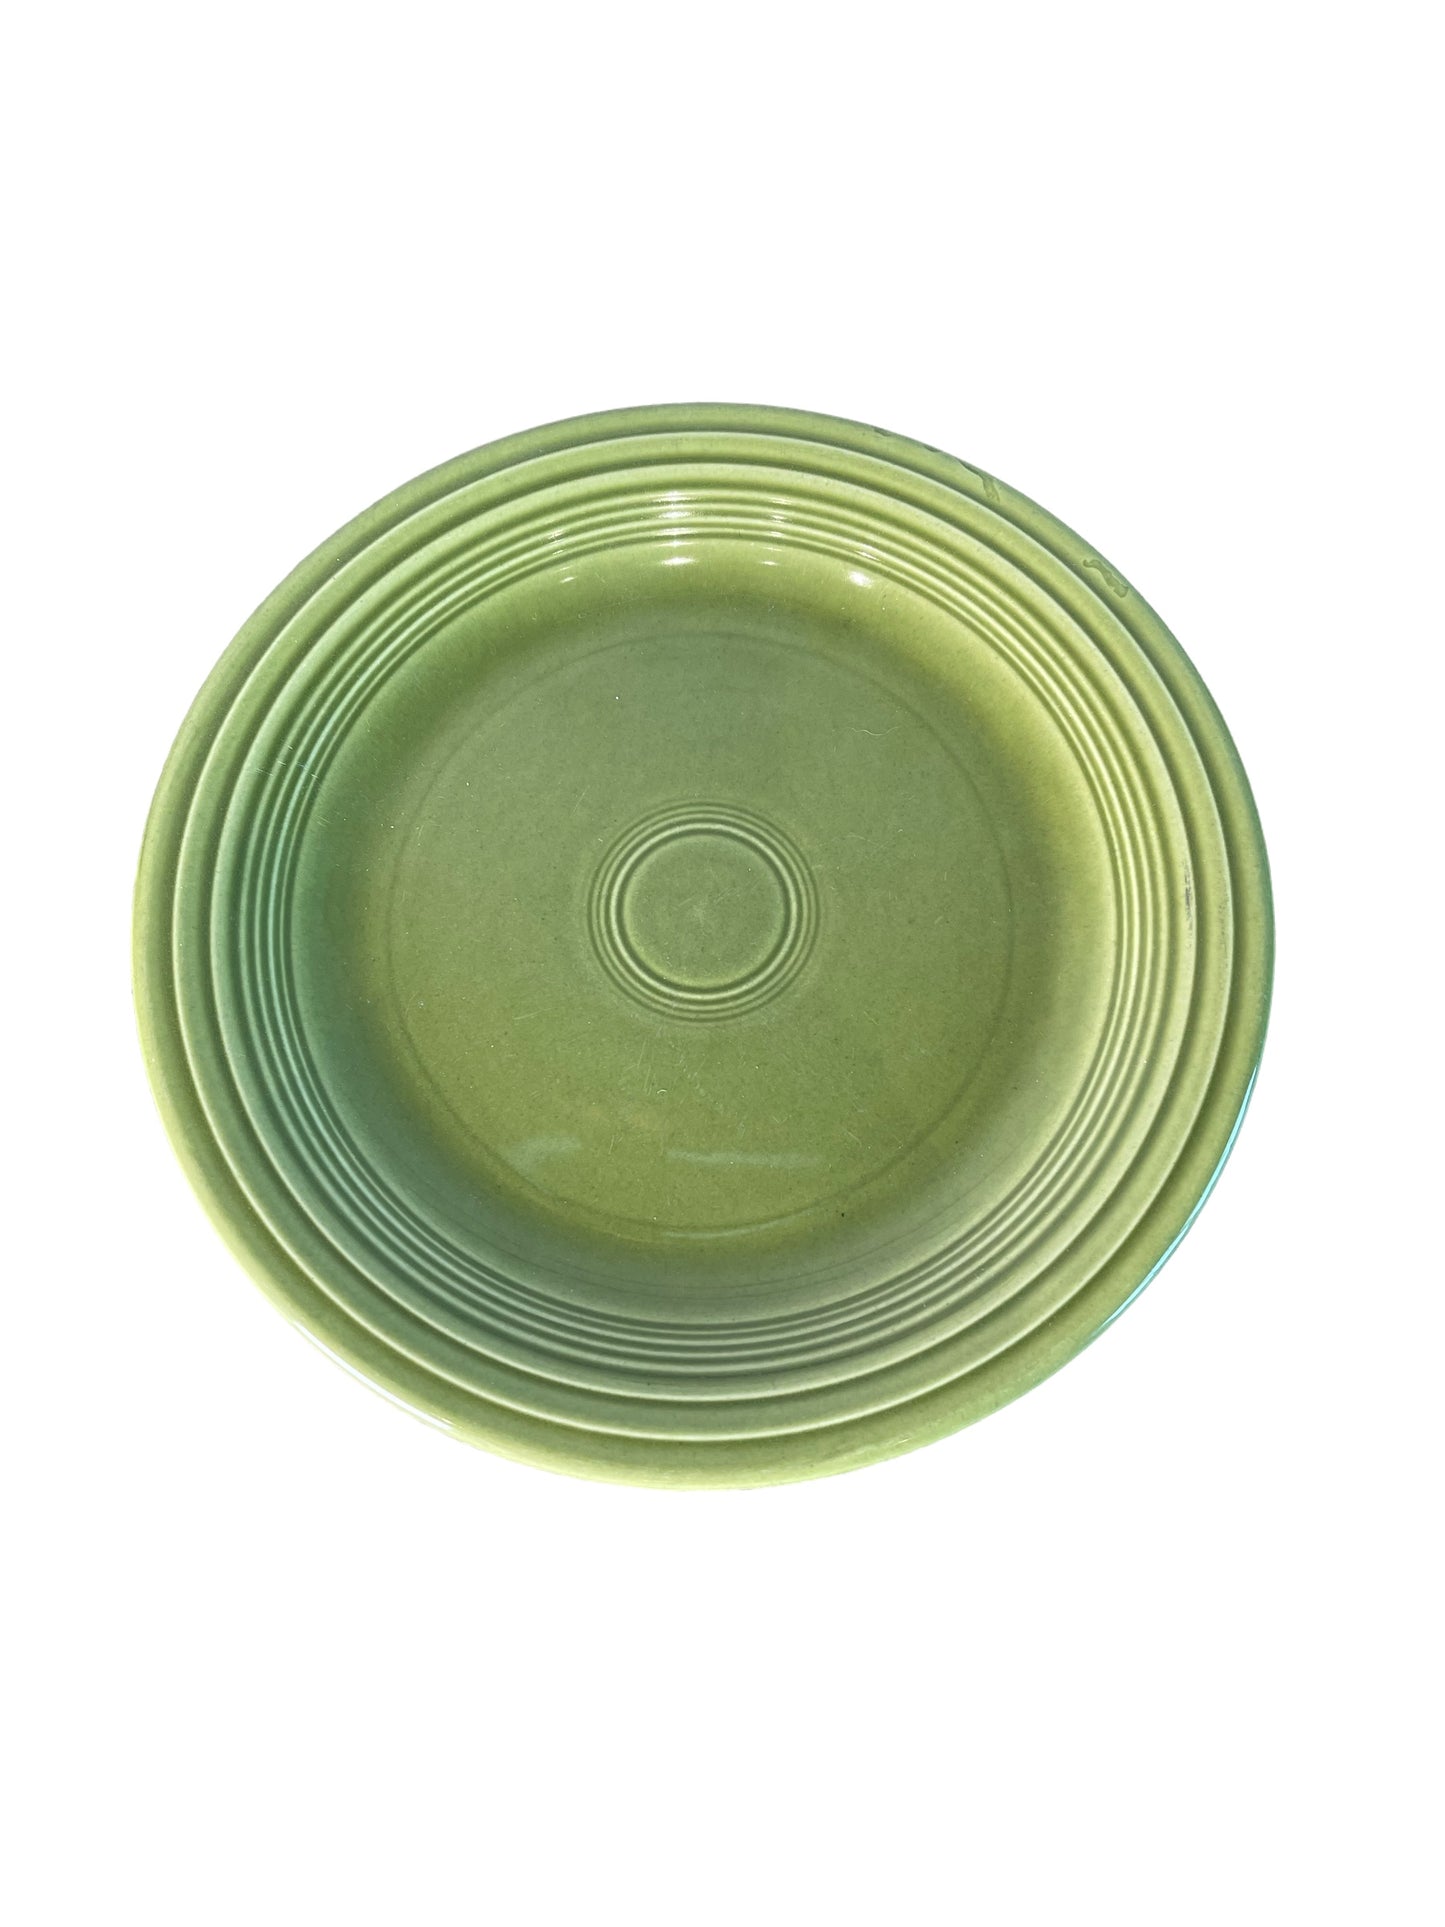 Vintage Fiestaware Turf Green Dinner Plate 10.25”